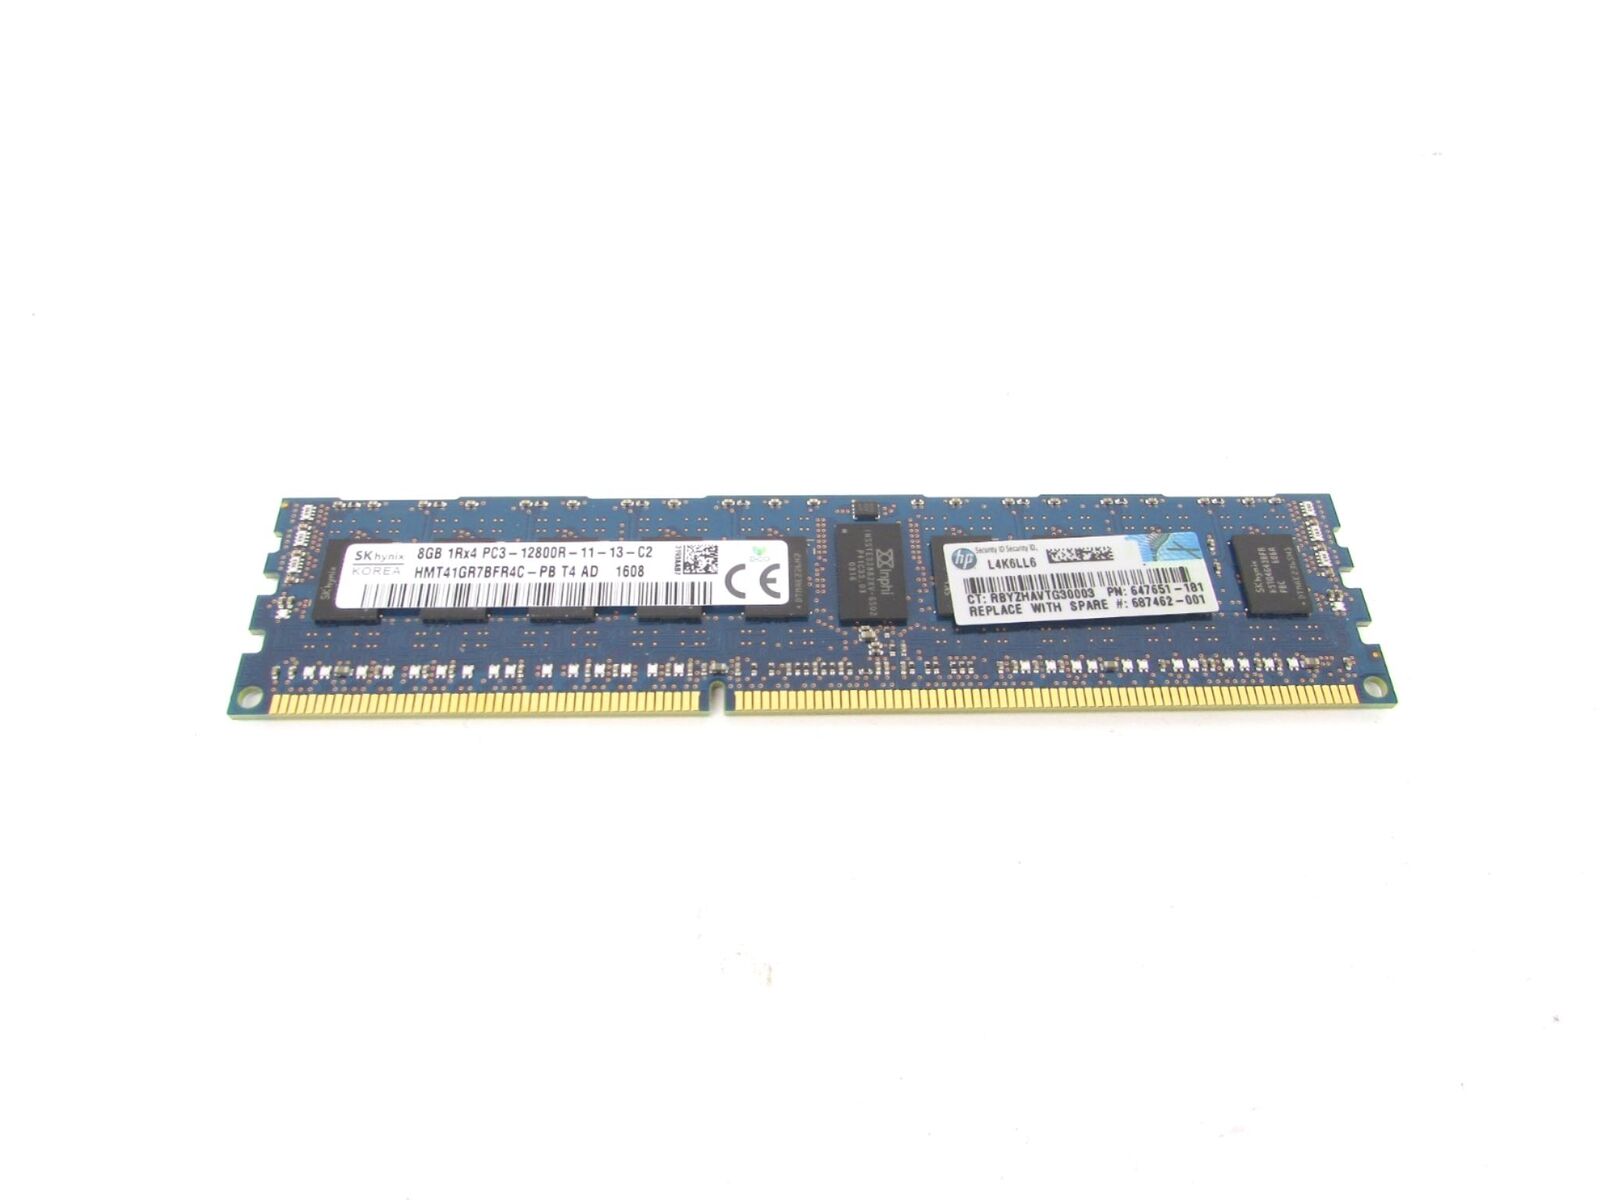 SK Hynix 8GB 1Rx4 PC3-12800R HMT41GR7BFR4C-PB T4 AD HP 647651-181 Server Memory